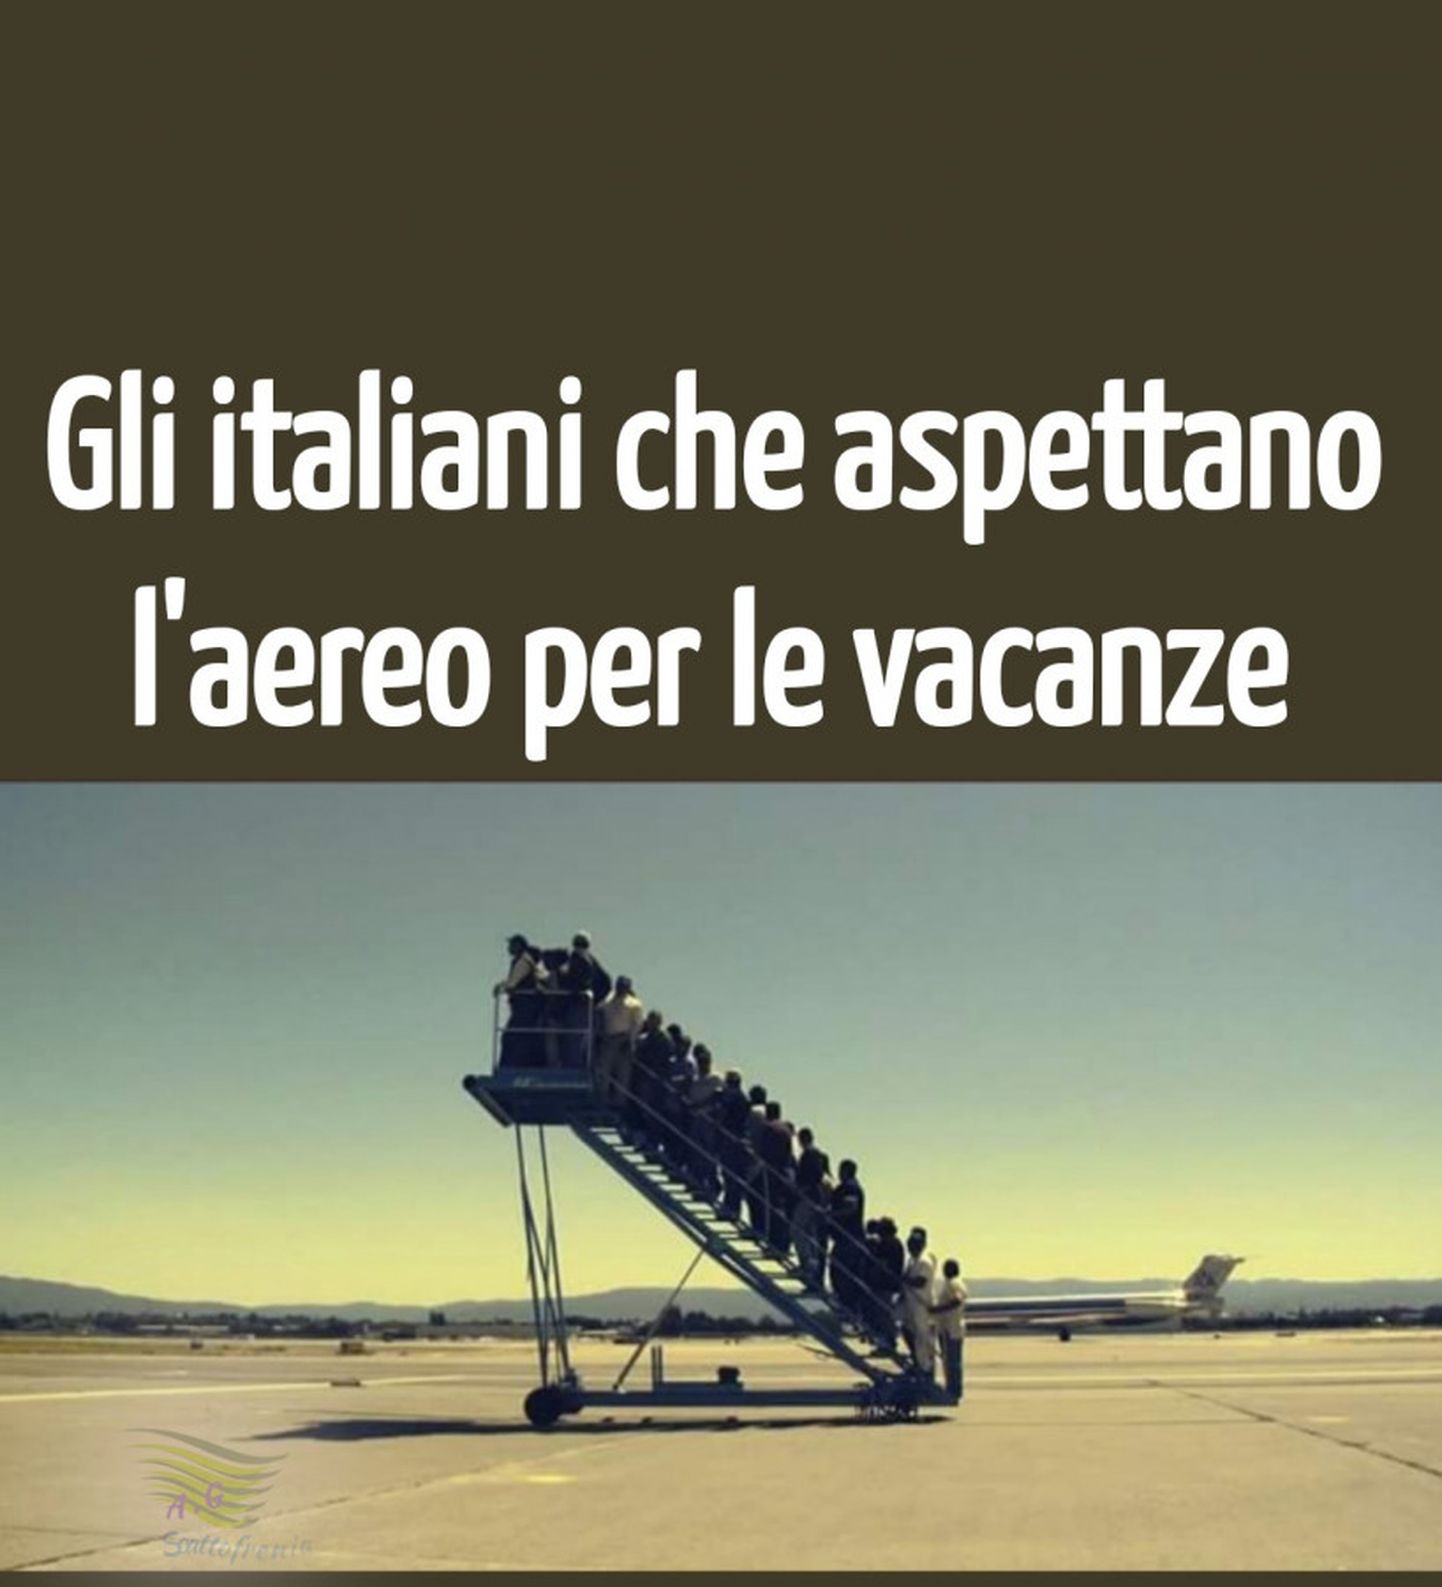 На Апеннинах любят посмеяться над собой, подпись к картинке гласит: «Итальянцы, которые ждут самолета, чтобы улететь в отпуск».